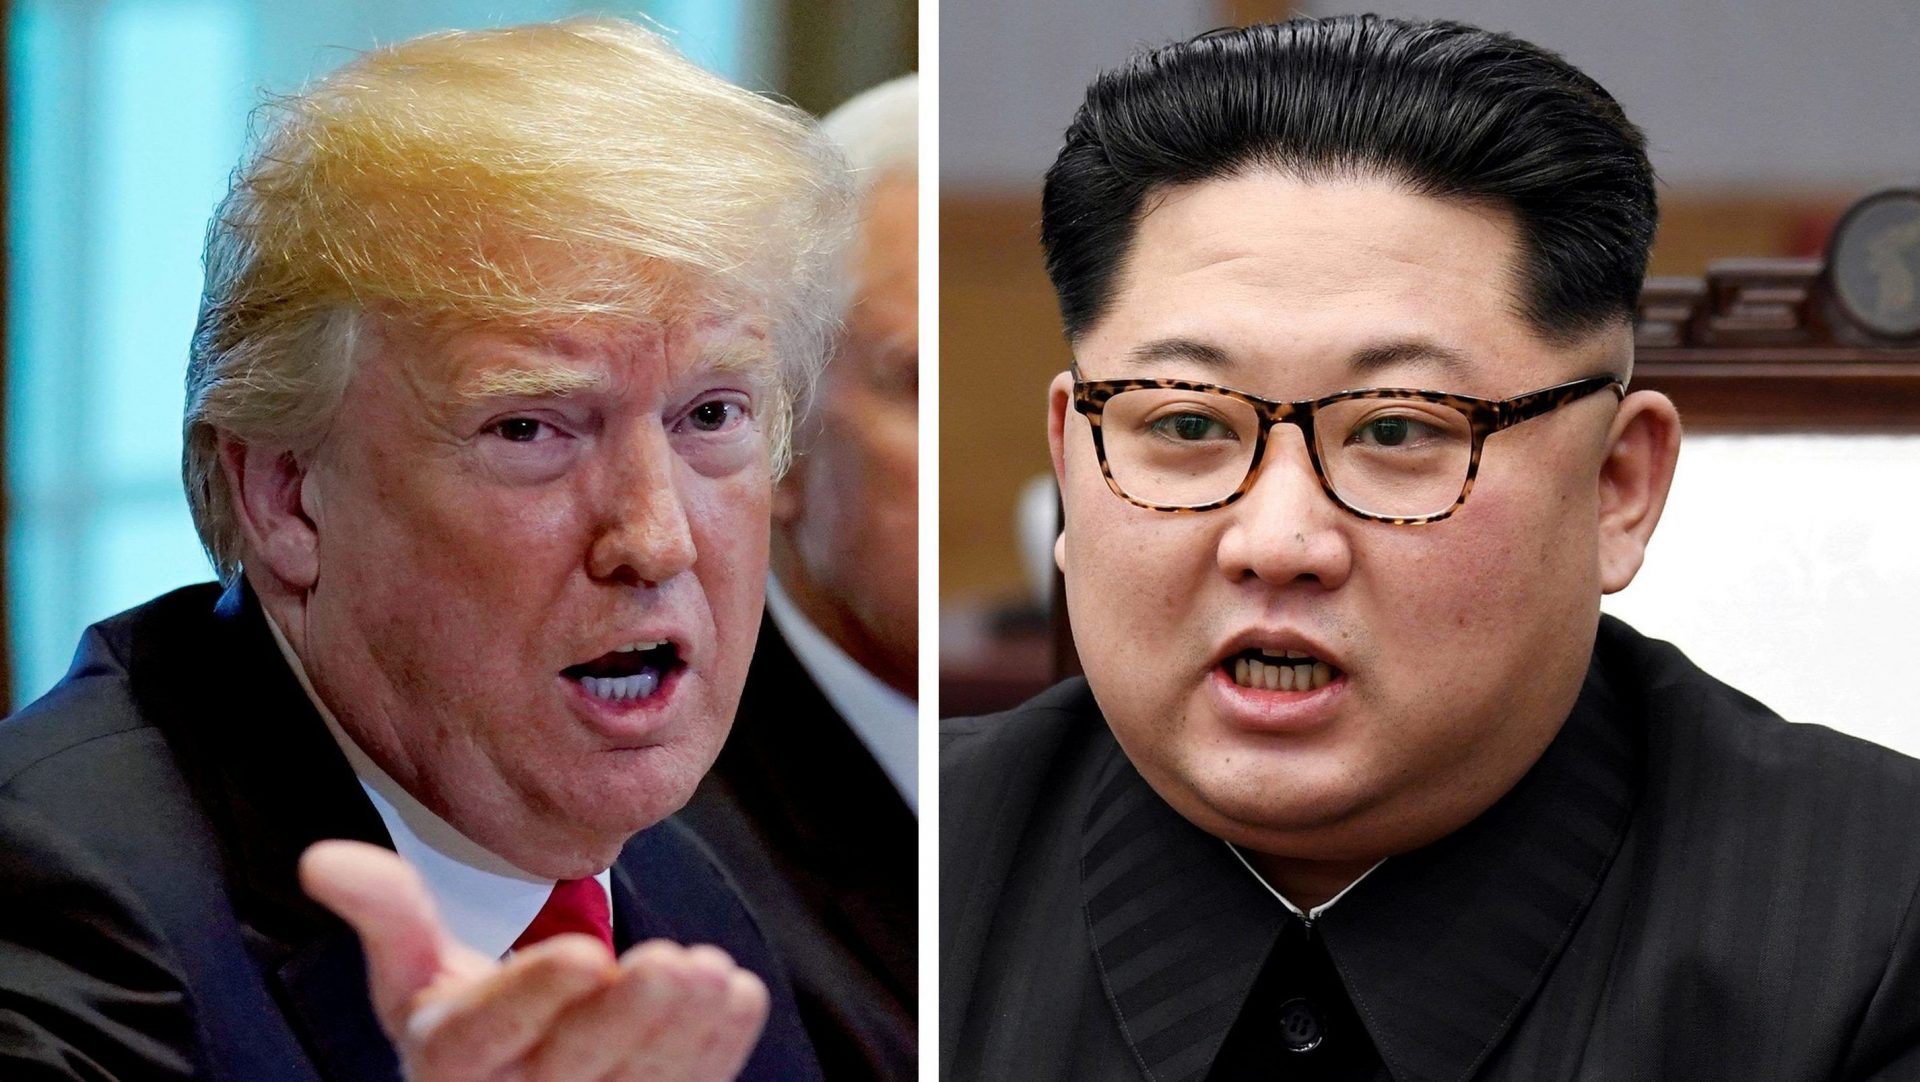 Viendra, viendra pas... Le président américain Donald Trump et le leader nord-coréen Kim Jong-un doivent se rencontrer (ou pas) à Singapour le 12 juin 2018. (Source : Quartz)